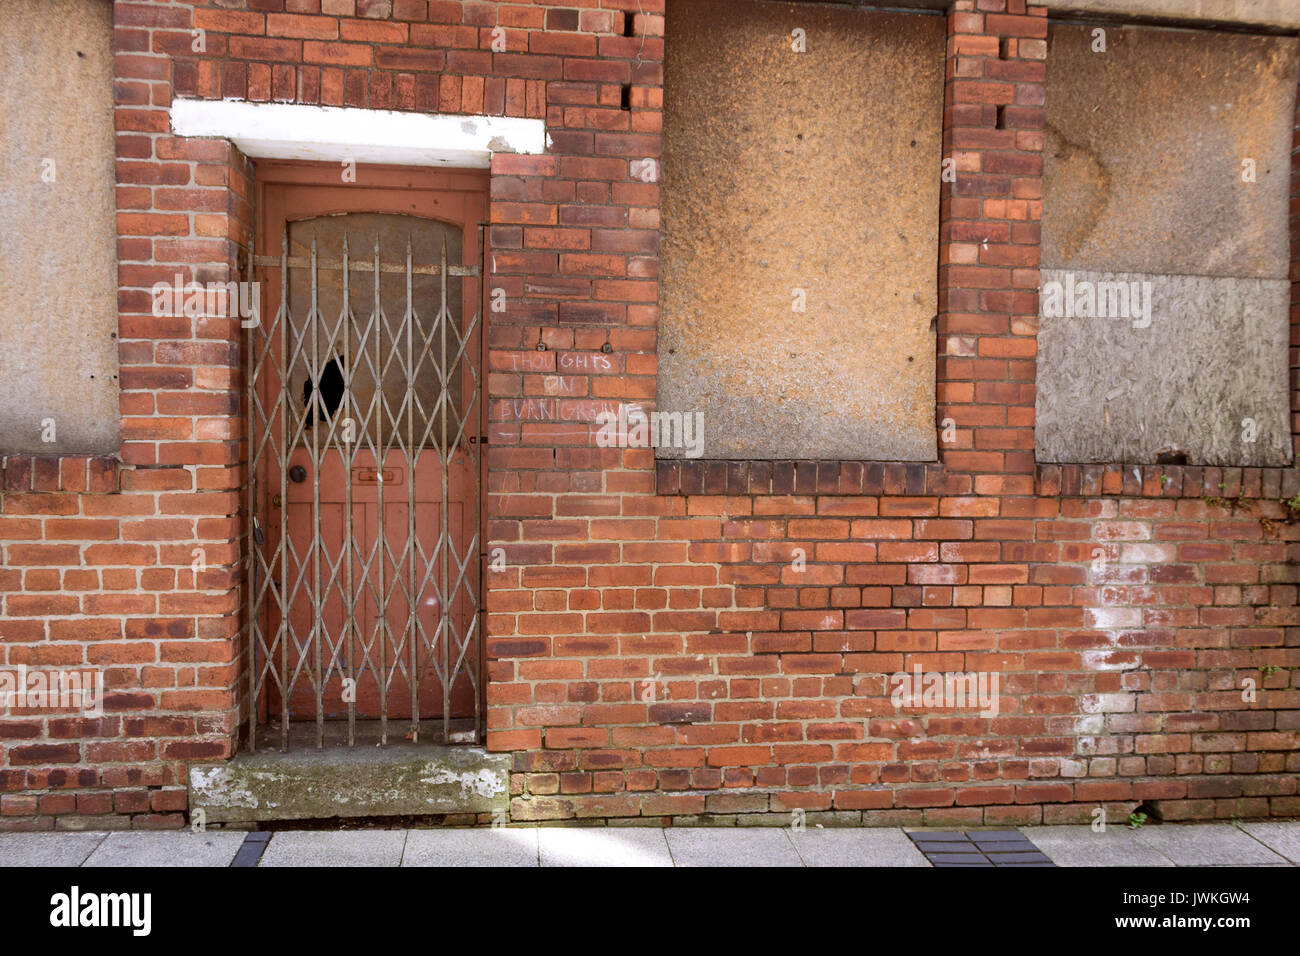 Edificio abandonado, con ventanas, barricadas, puerta de hierro, ventana rota, área urbana, sellado, ladrillo exterior, cierre, asegurado Foto de stock